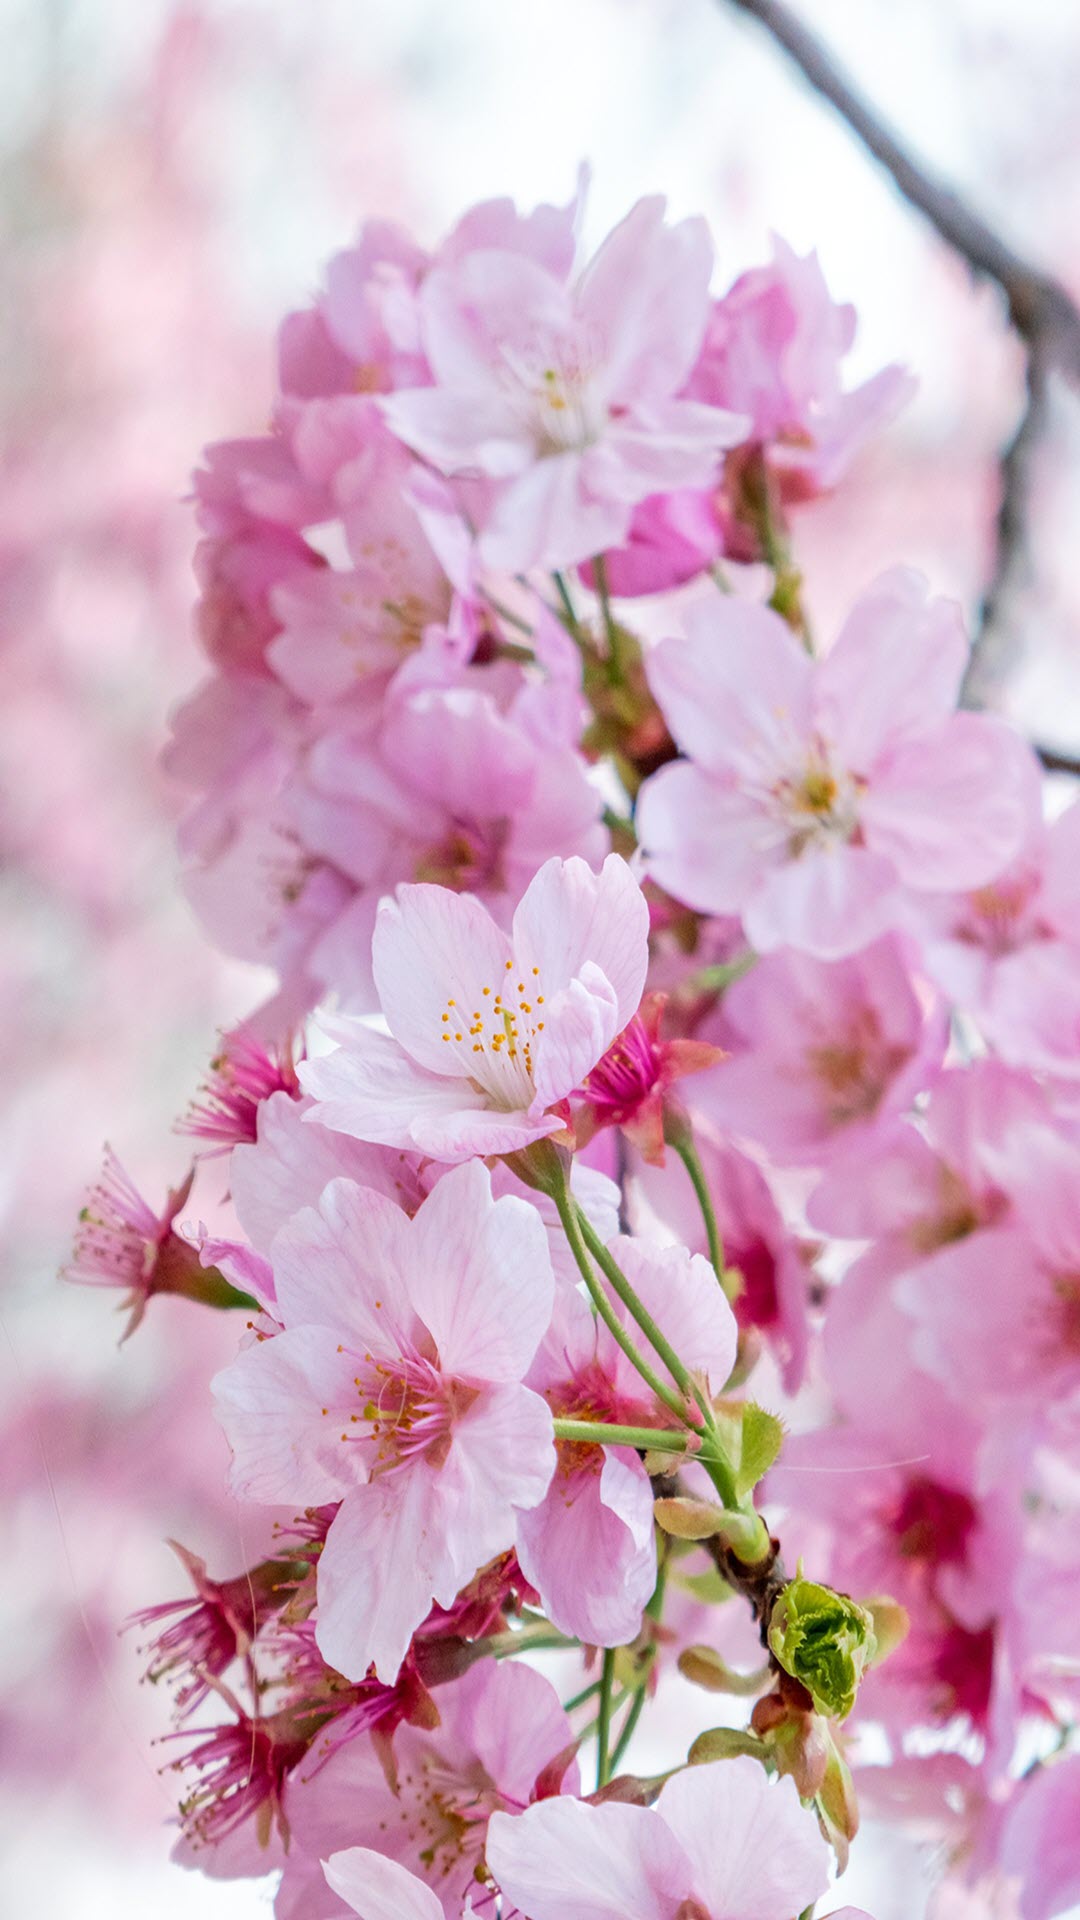 Điểm nhấn hoàn hảo cho hình nền của bạn là hoa anh đào - một loại hoa tinh khôi và đầy ý nghĩa. Hãy sử dụng hình ảnh này để tạo nên một không gian làm việc hoặc thư giãn đúng chất mùa xuân.